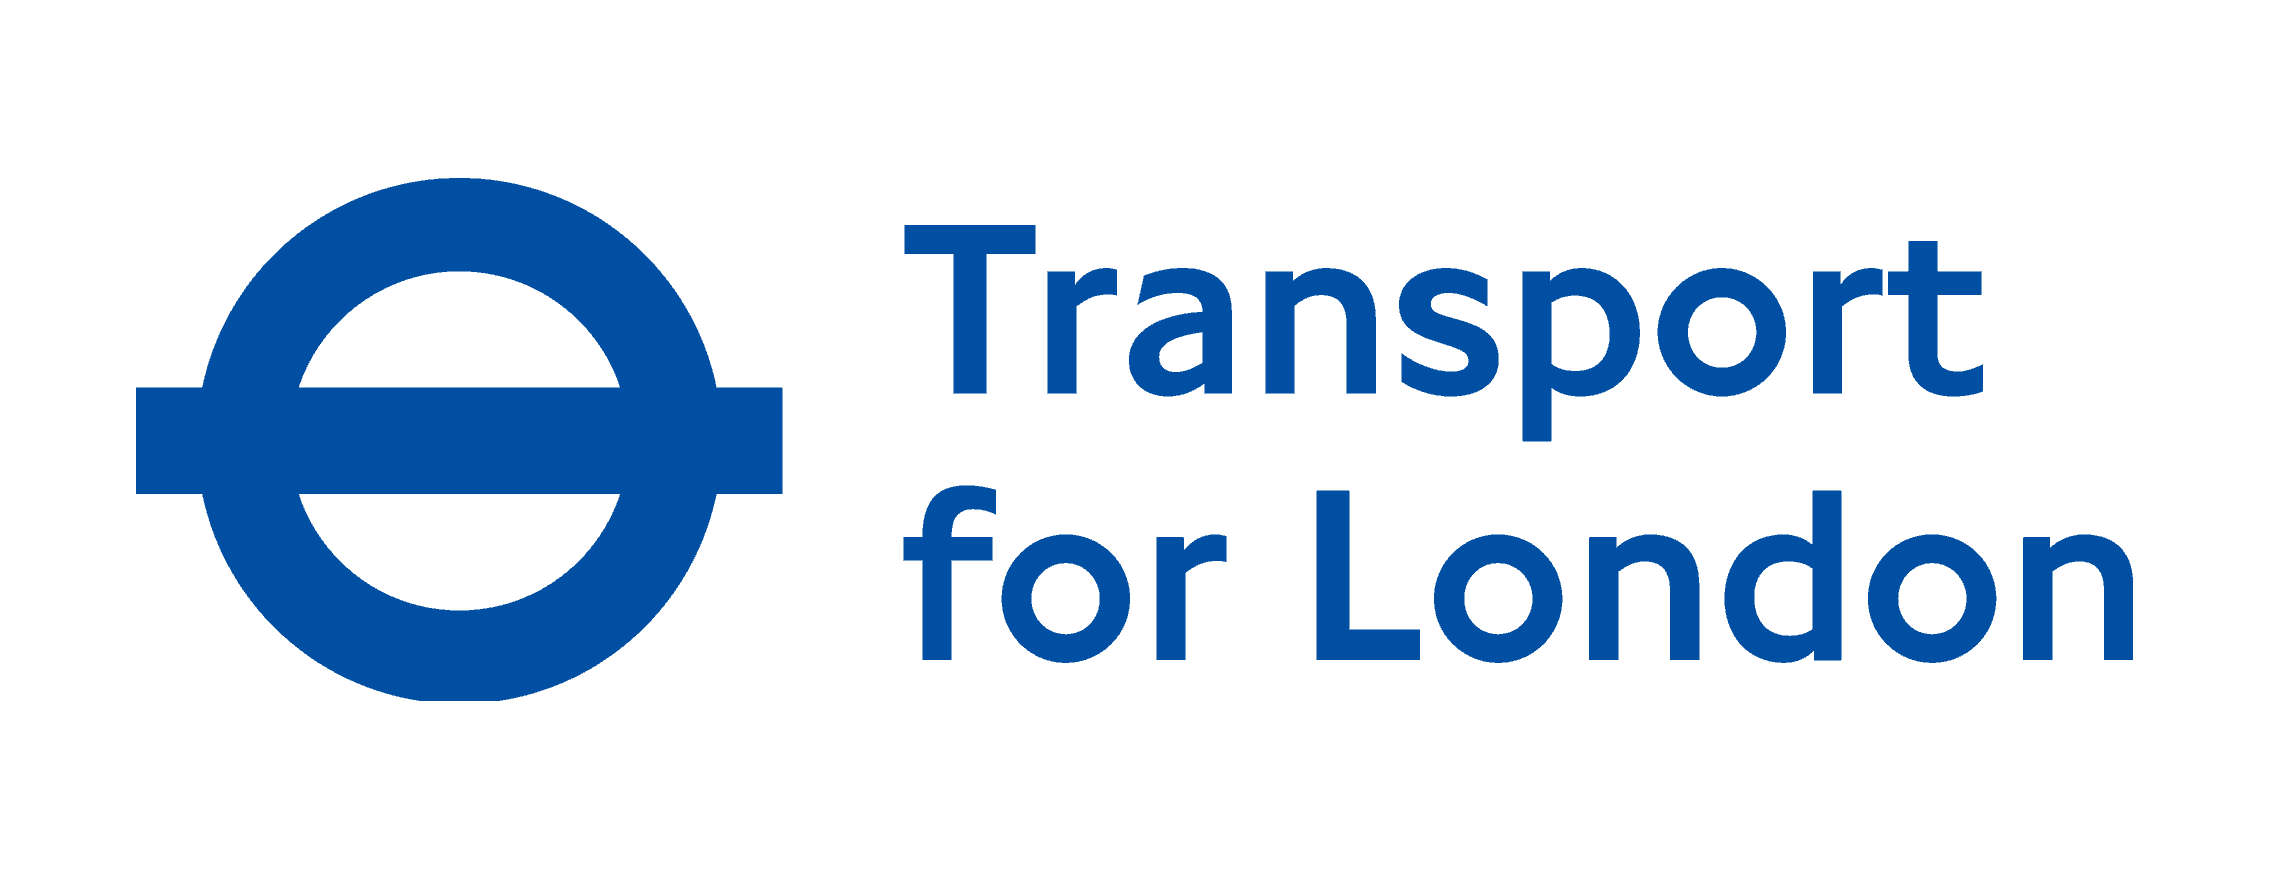 Transporte para el logotipo de Londres